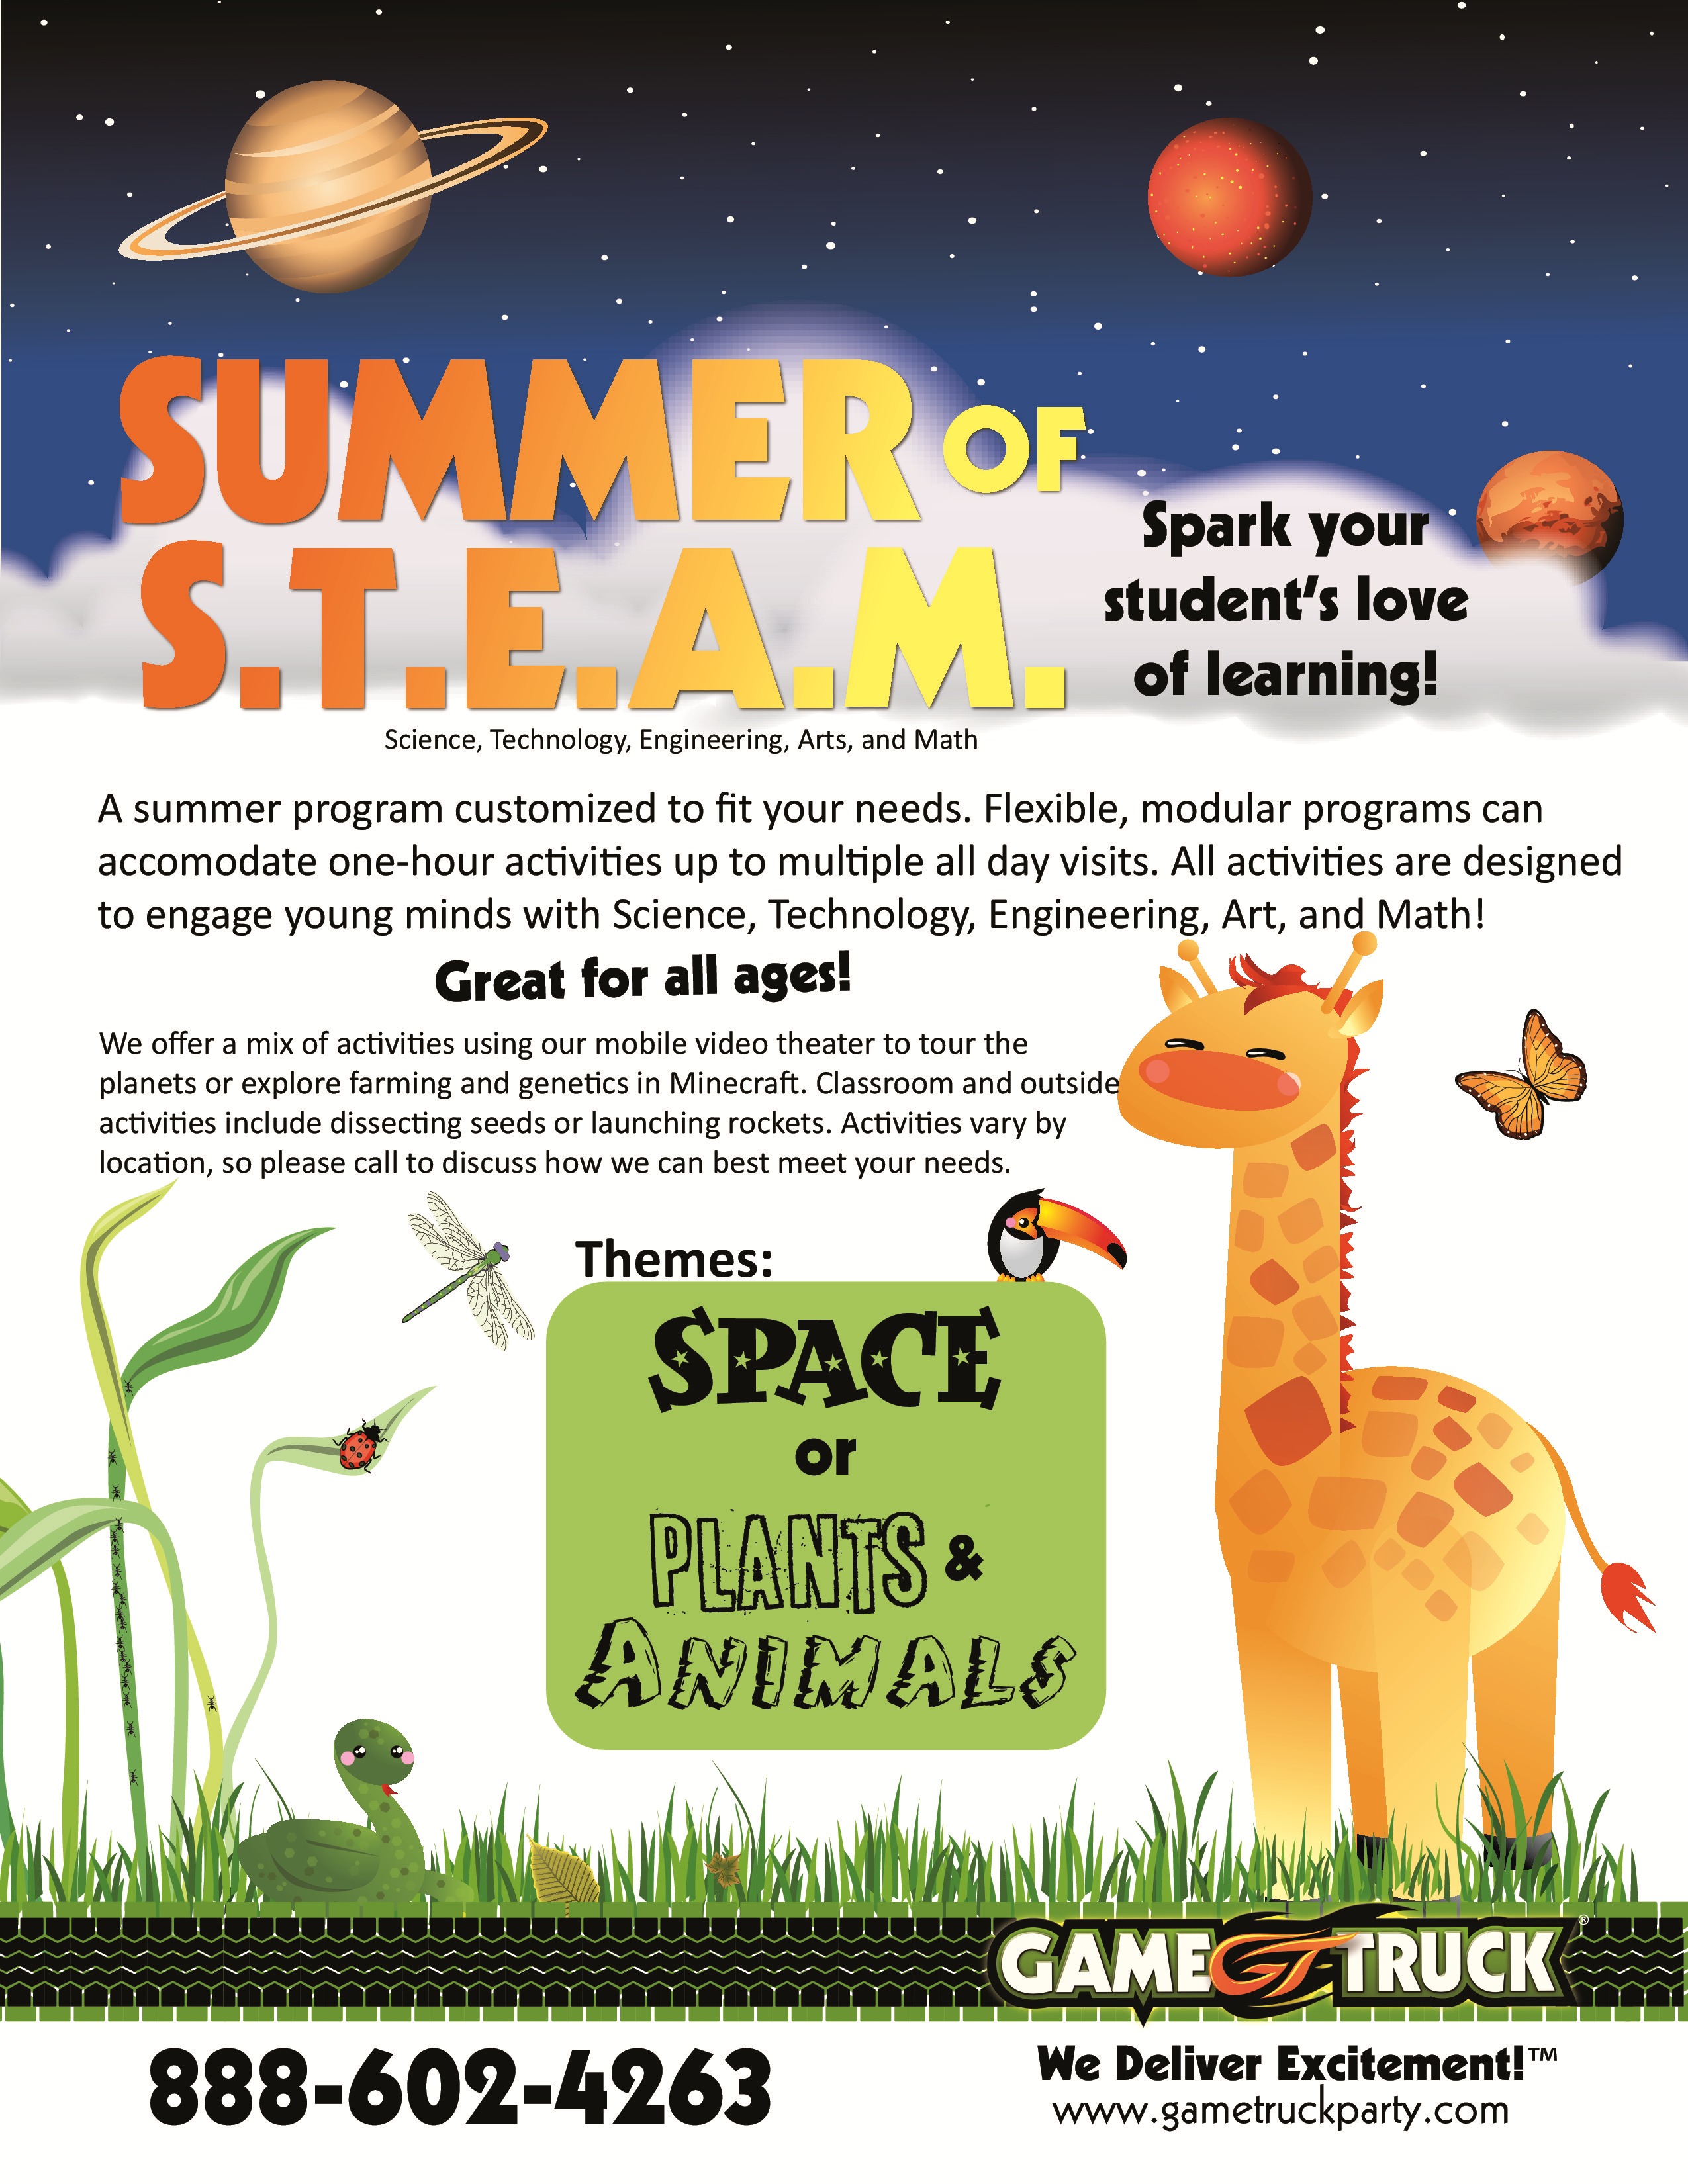 GameTruck STEAM Summer Program 